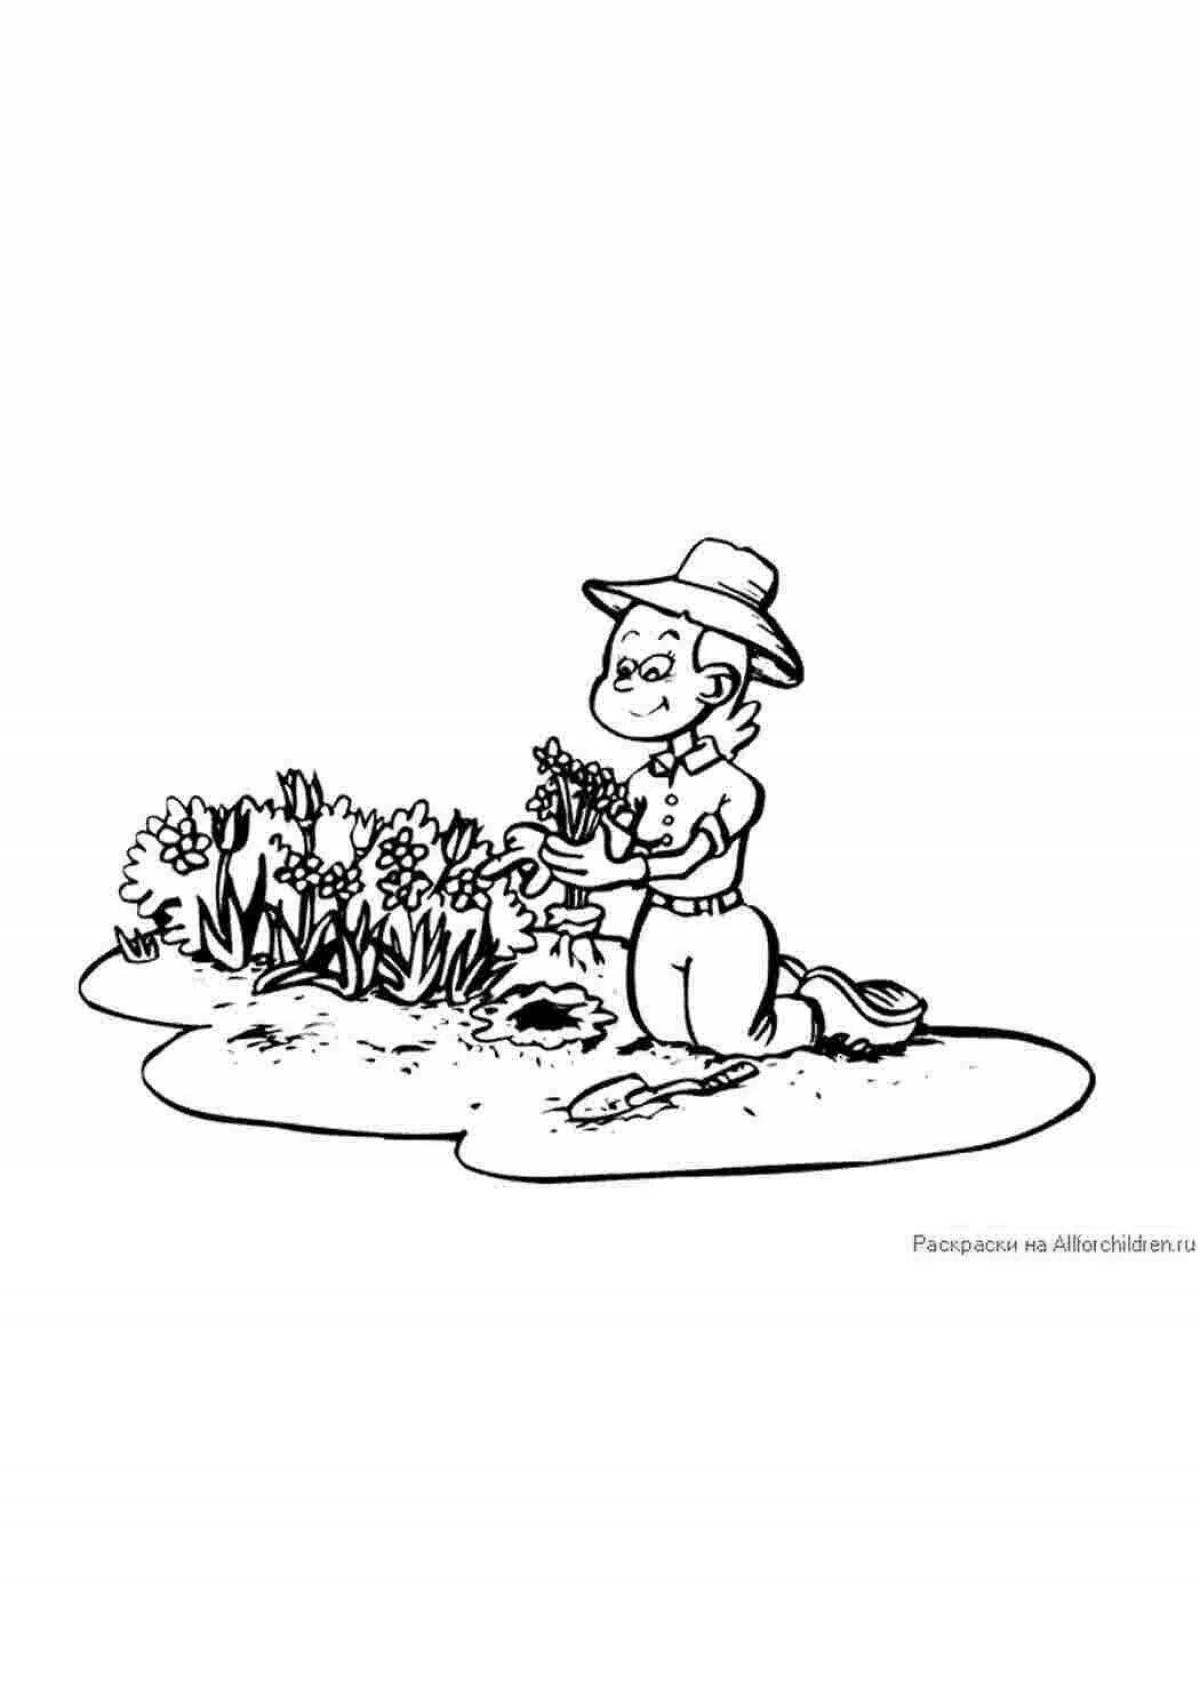 Children's gardener #4